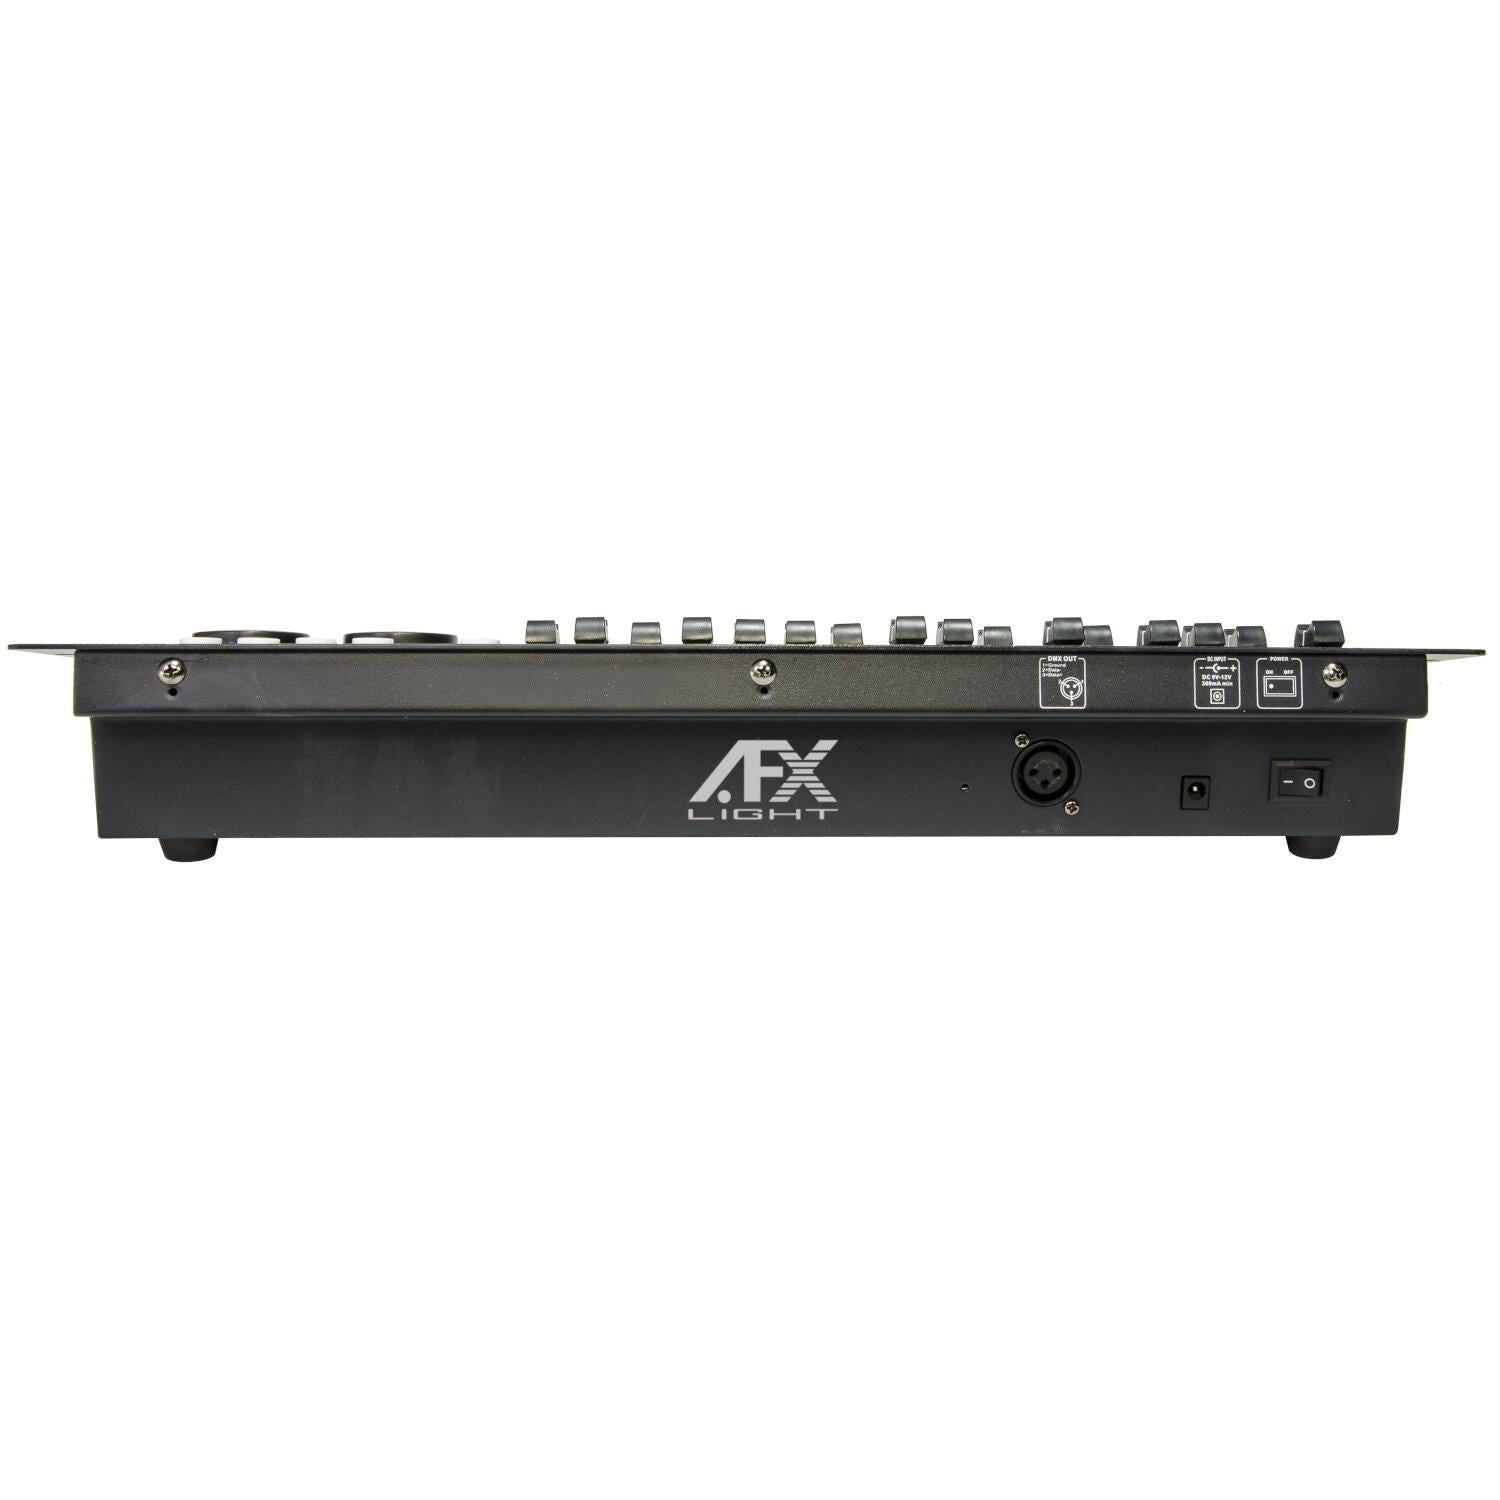 AFX DMX512-PRO DMX Lighting Controller - DY Pro Audio